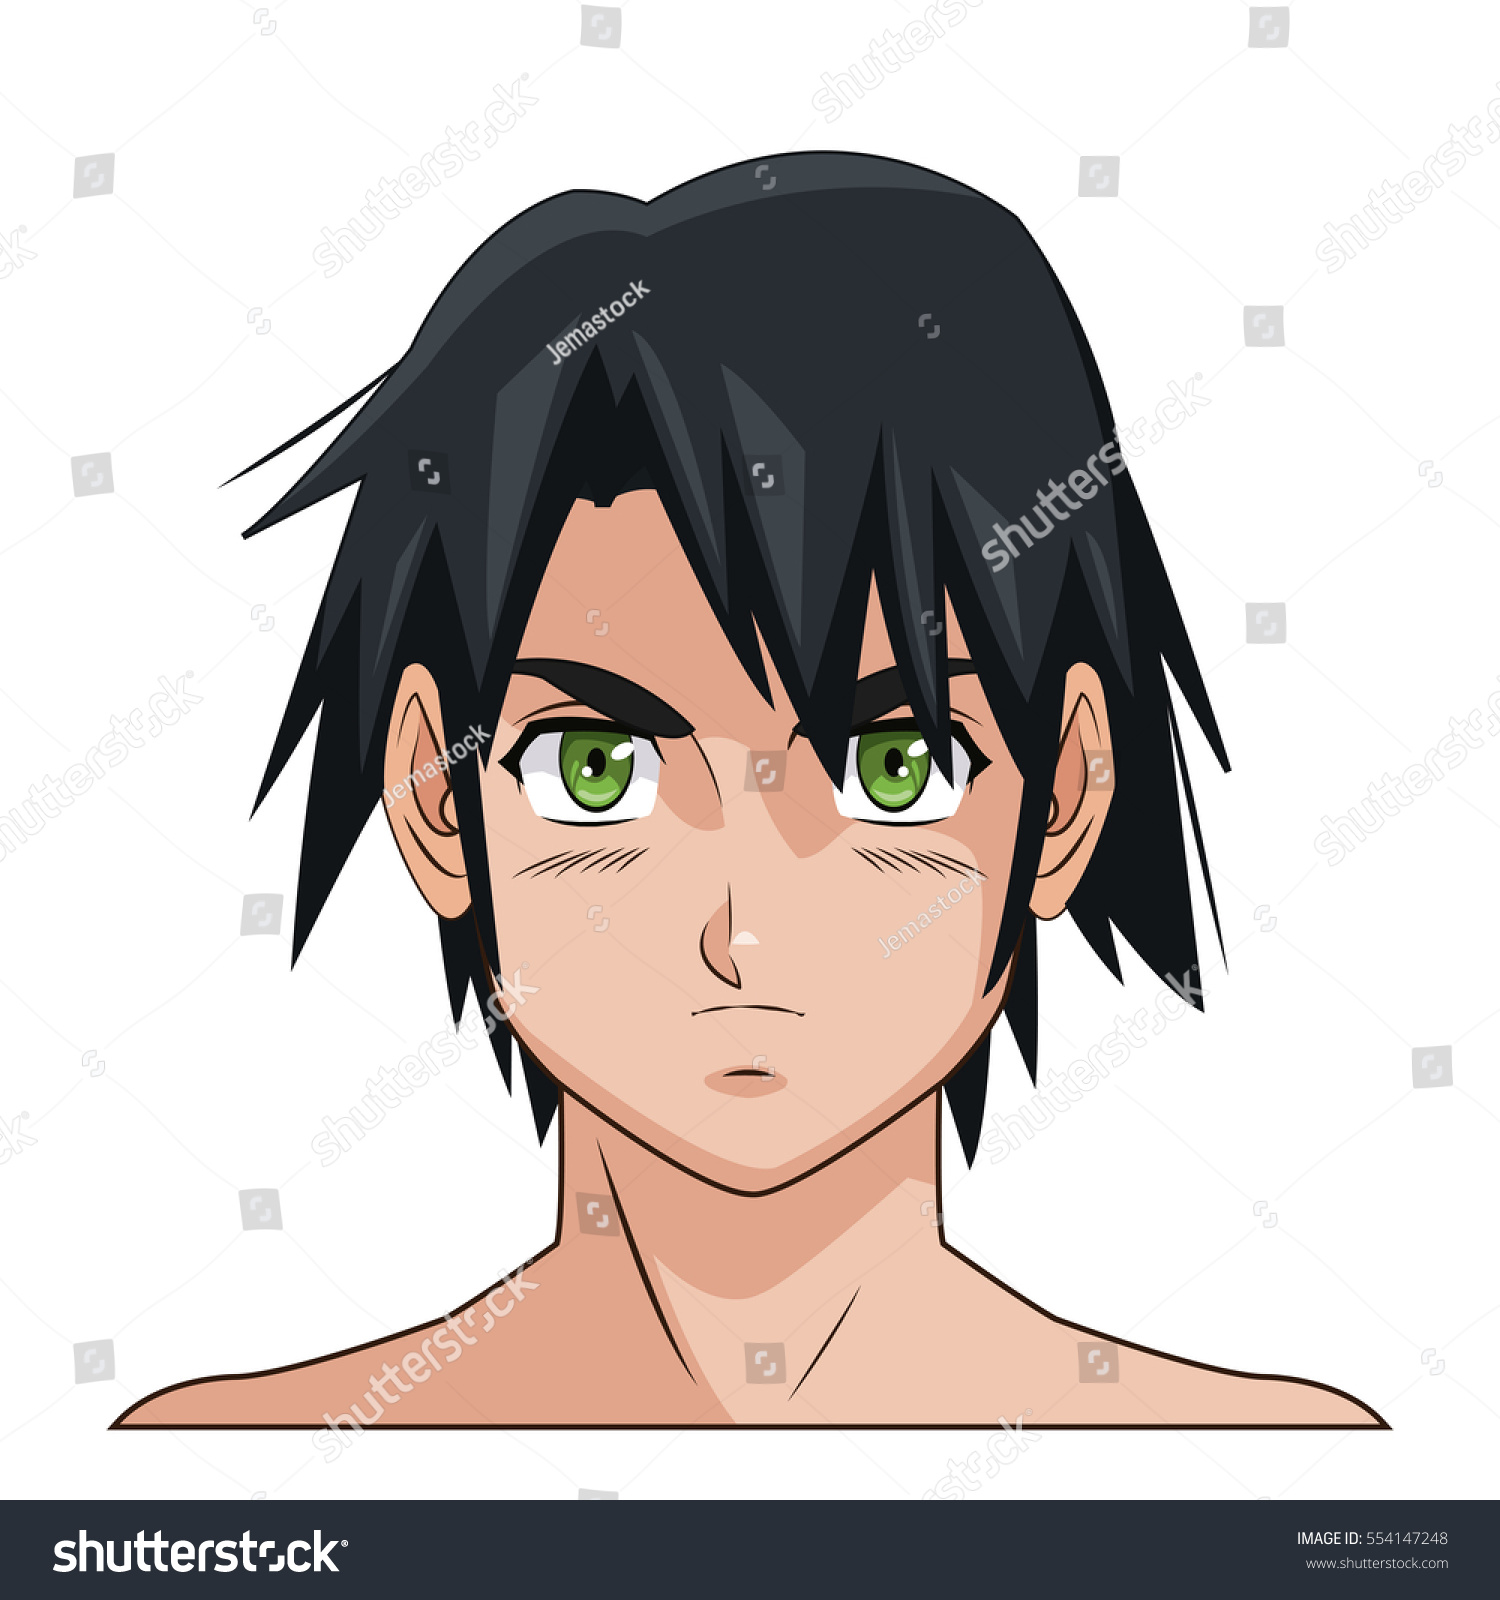 Image Vectorielle De Stock De Portrait Visage Manga Anime